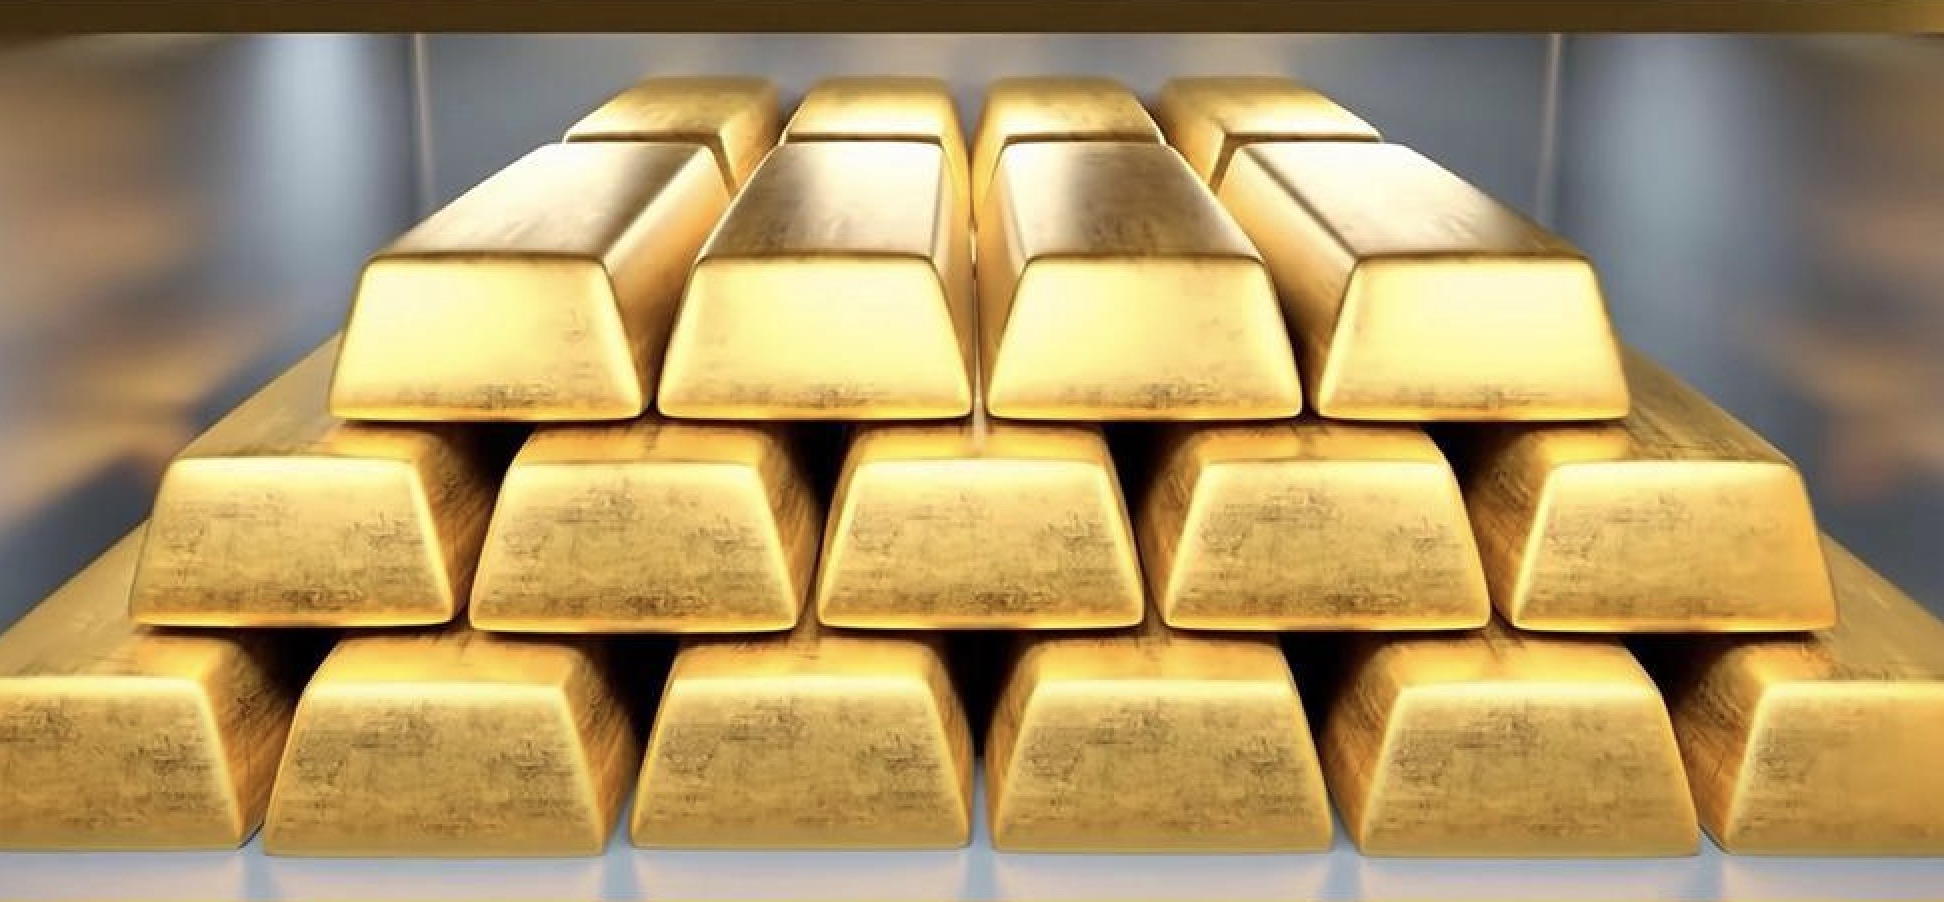 Pengingat perdagangan emas: CPI AS naik lebih dari perkiraan, jangan pernah berpikir untuk menurunkan suku bunga di bulan Juni! Harga emas turun dari rekor tertinggi, risalah rapat "mengkompensasi kerugian"